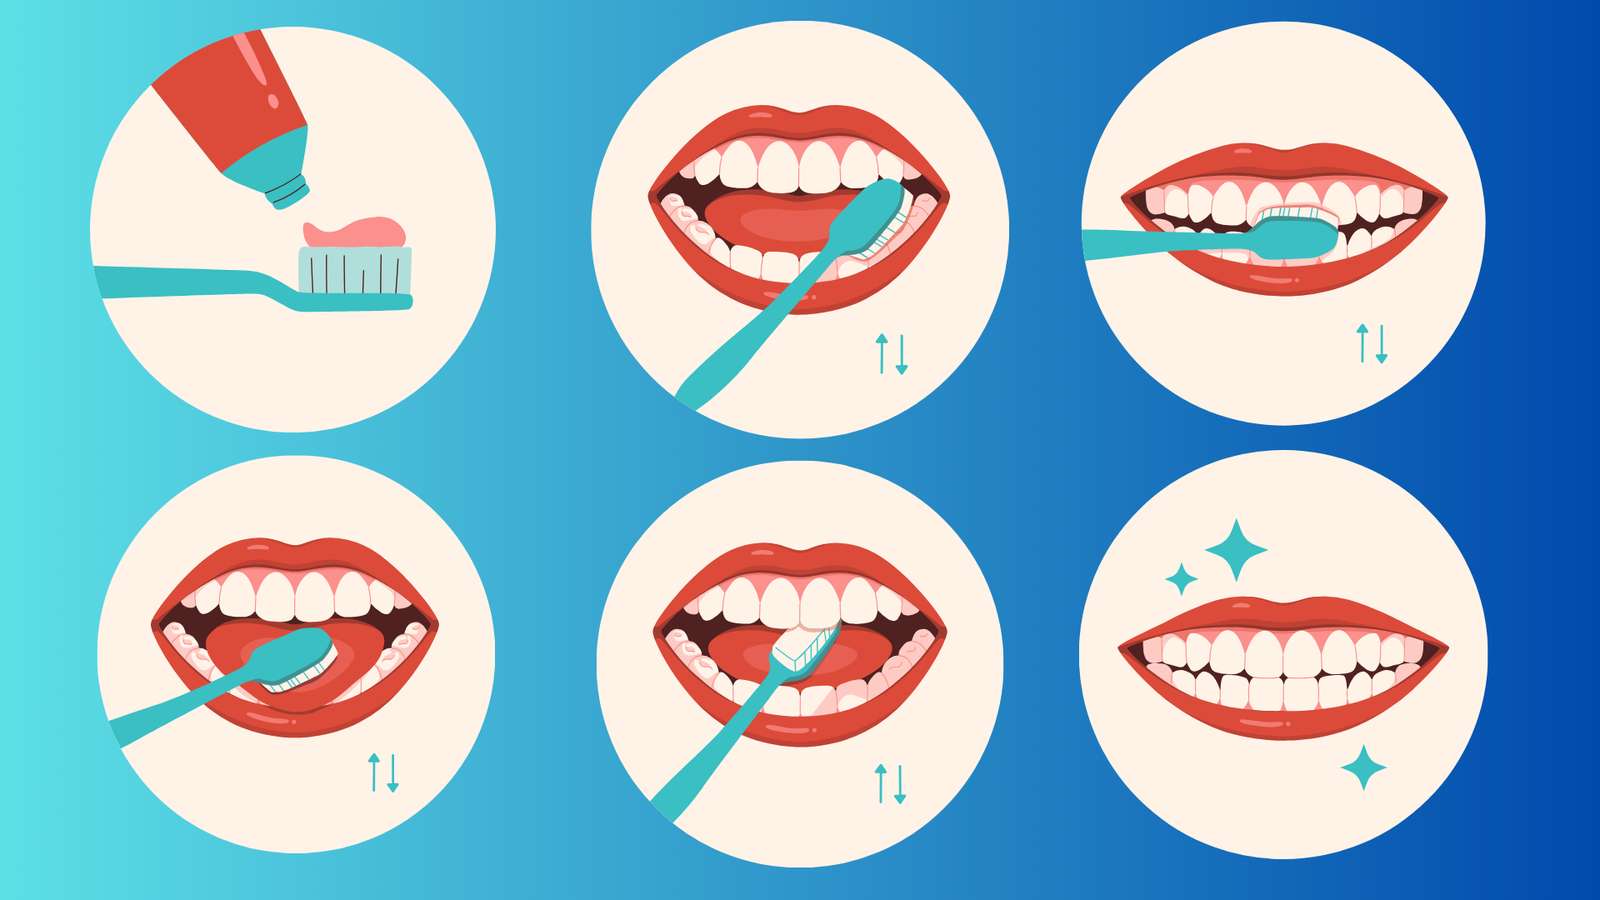 zdrowie stomatologiczne puzzle online ze zdjęcia